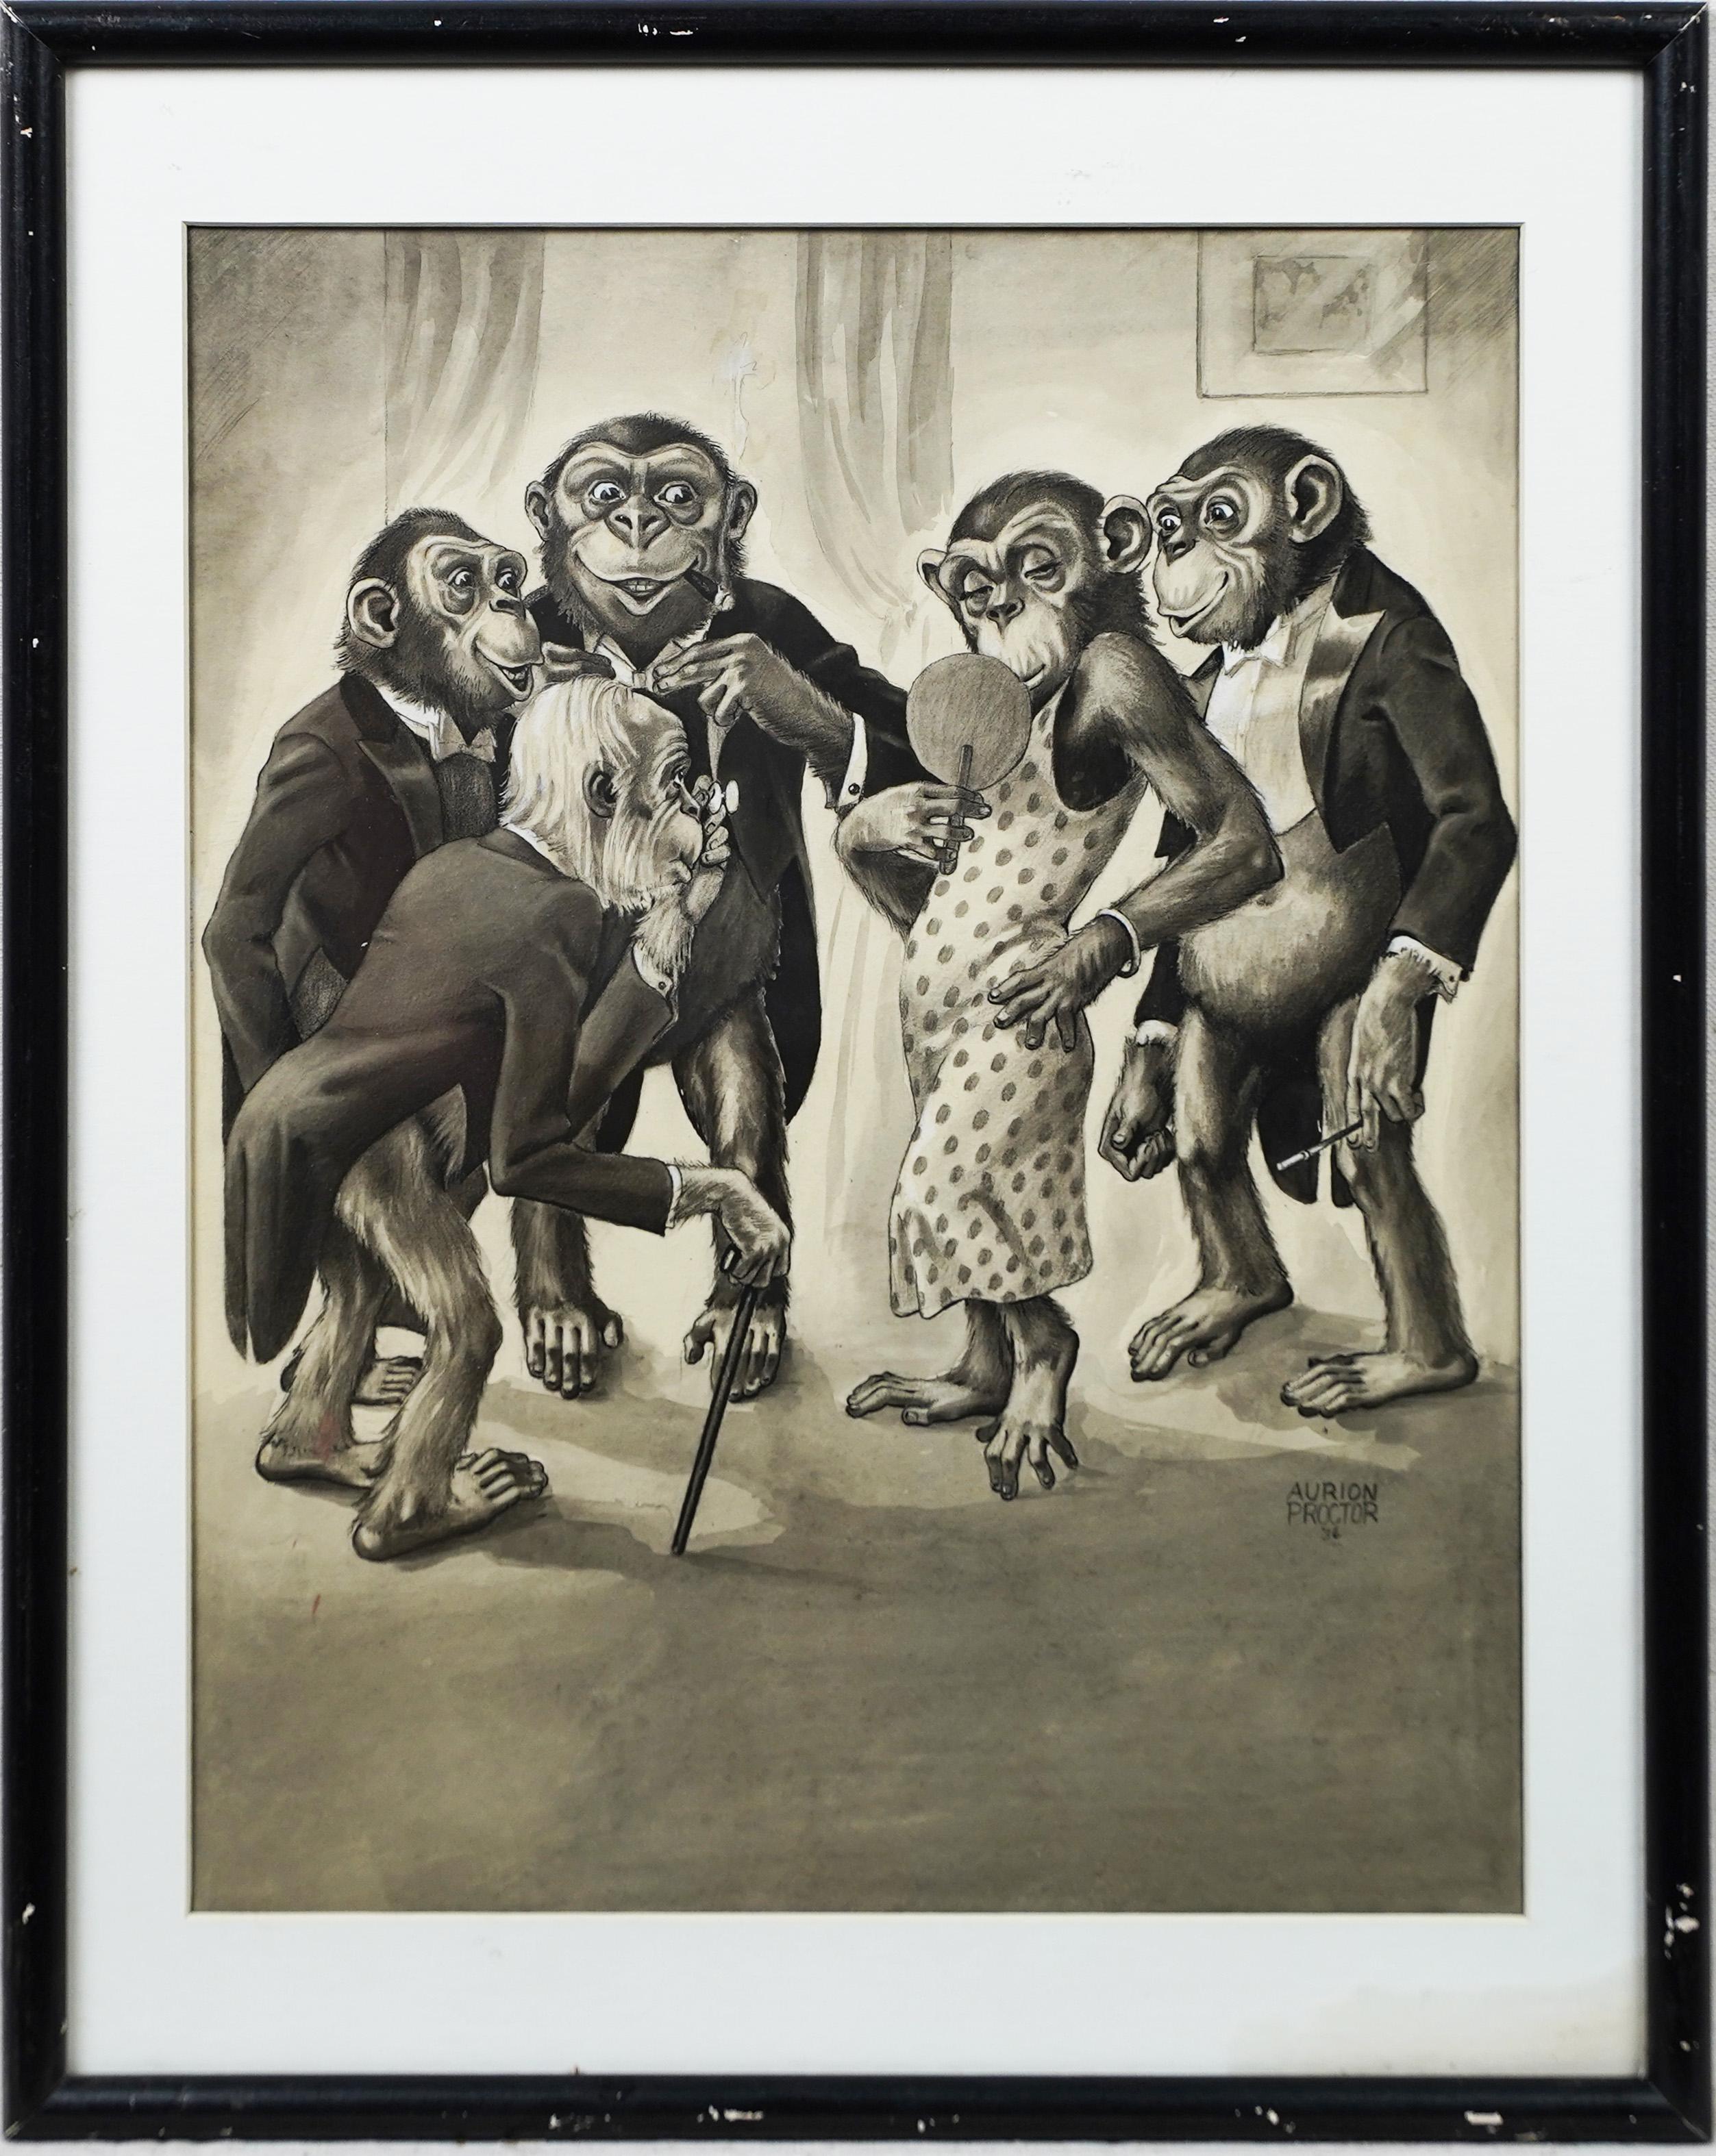 Magnifique dessin humoristique de singe américain antique surréaliste signé Anamorphic 